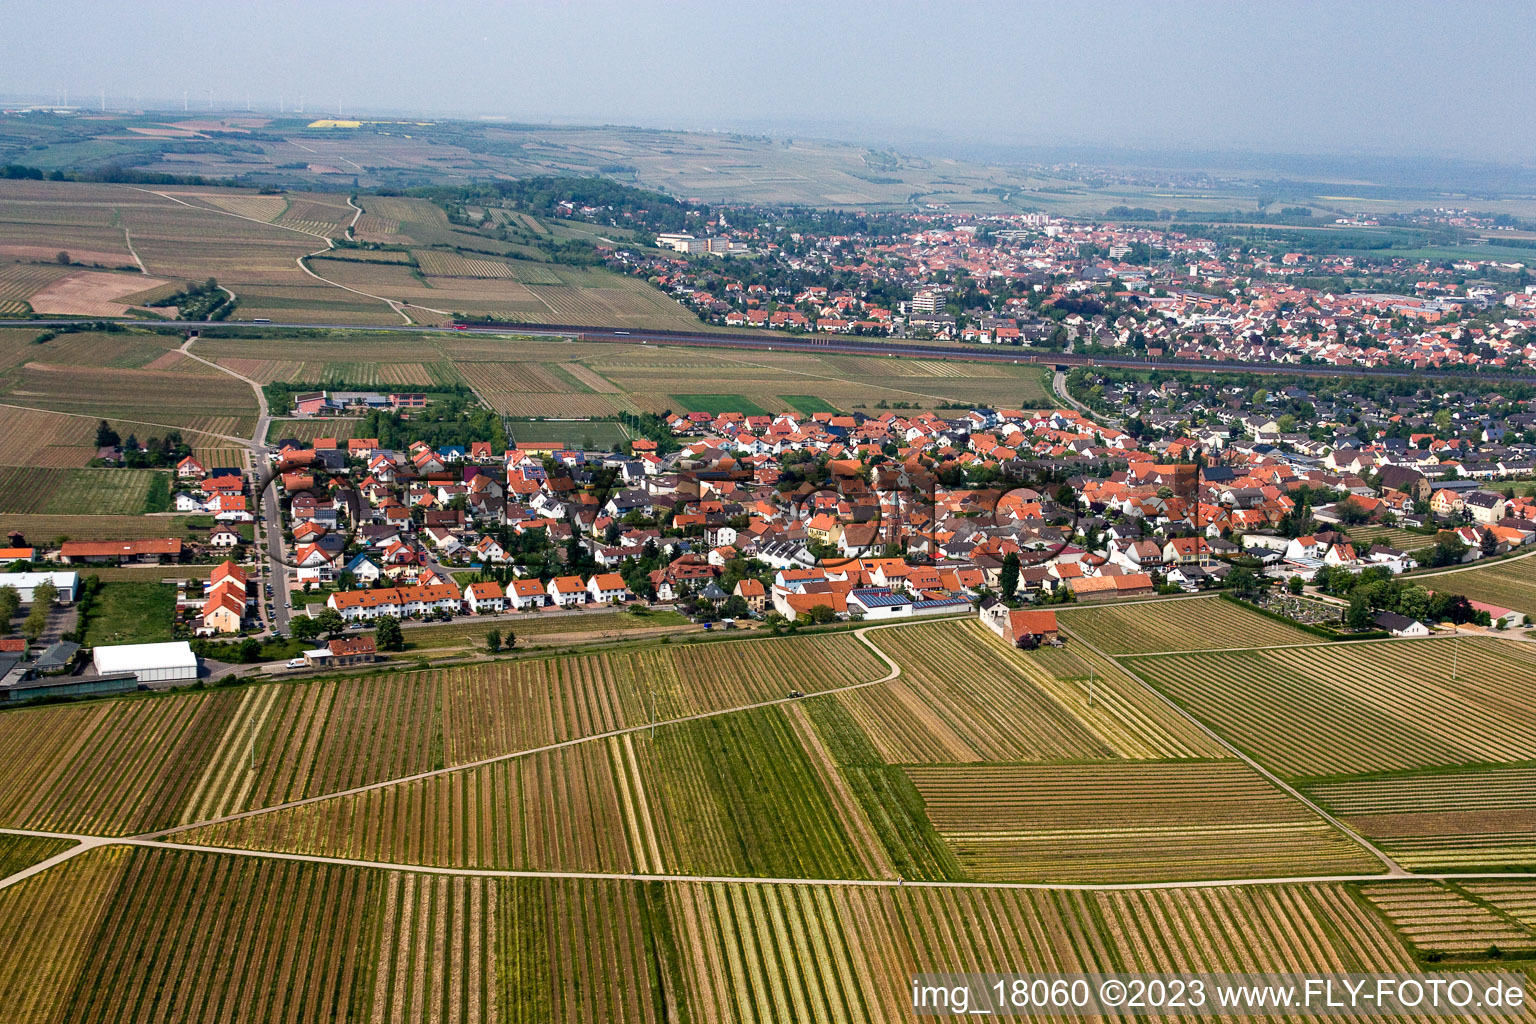 Kleinkarlbach dans le département Rhénanie-Palatinat, Allemagne du point de vue du drone